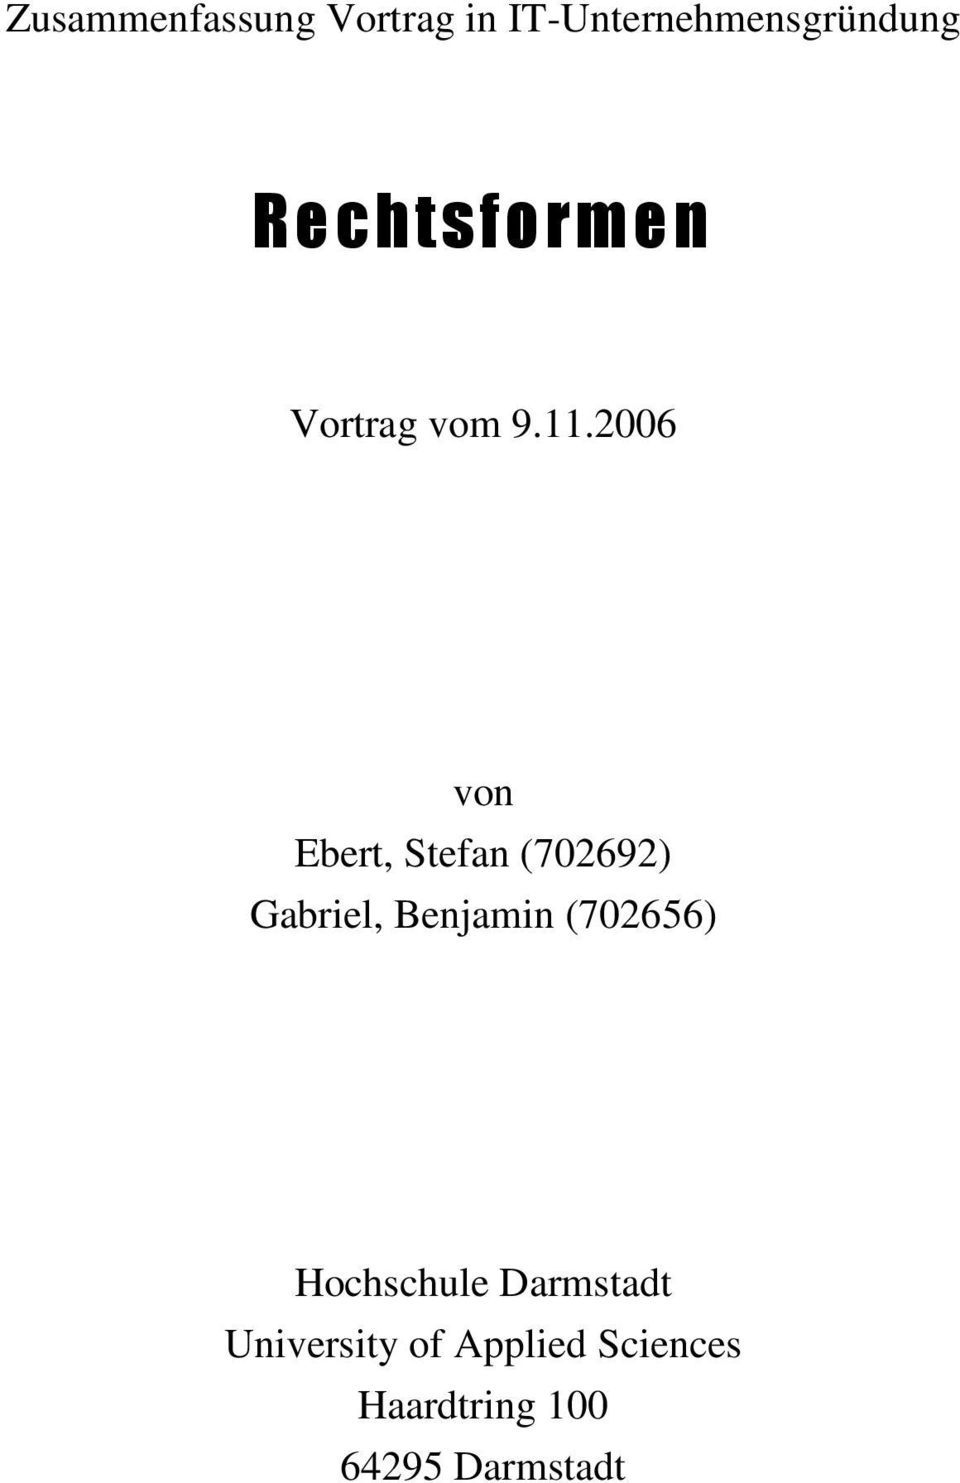 2006 von Ebert, Stefan (702692) Gabriel, Benjamin